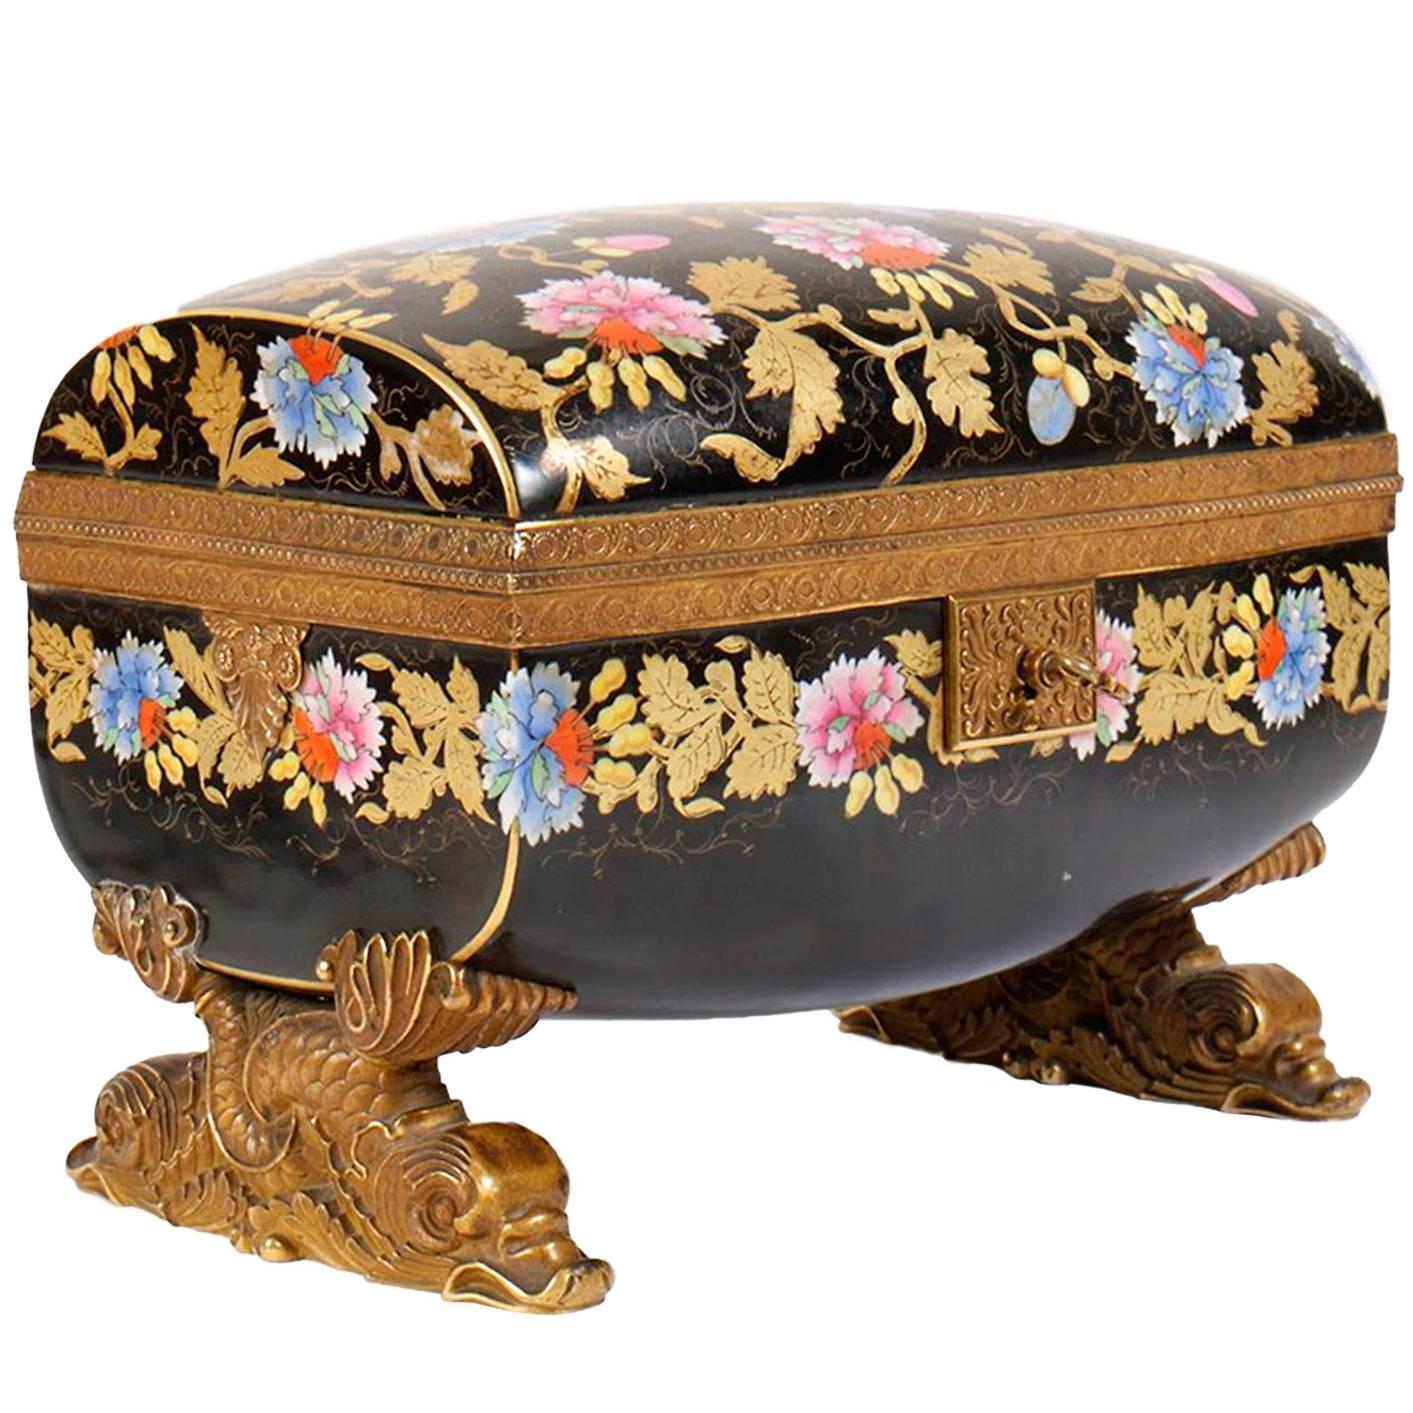 Faux Cloisonné Bronze-Mounted Painted Floral Porcelain Box with Key